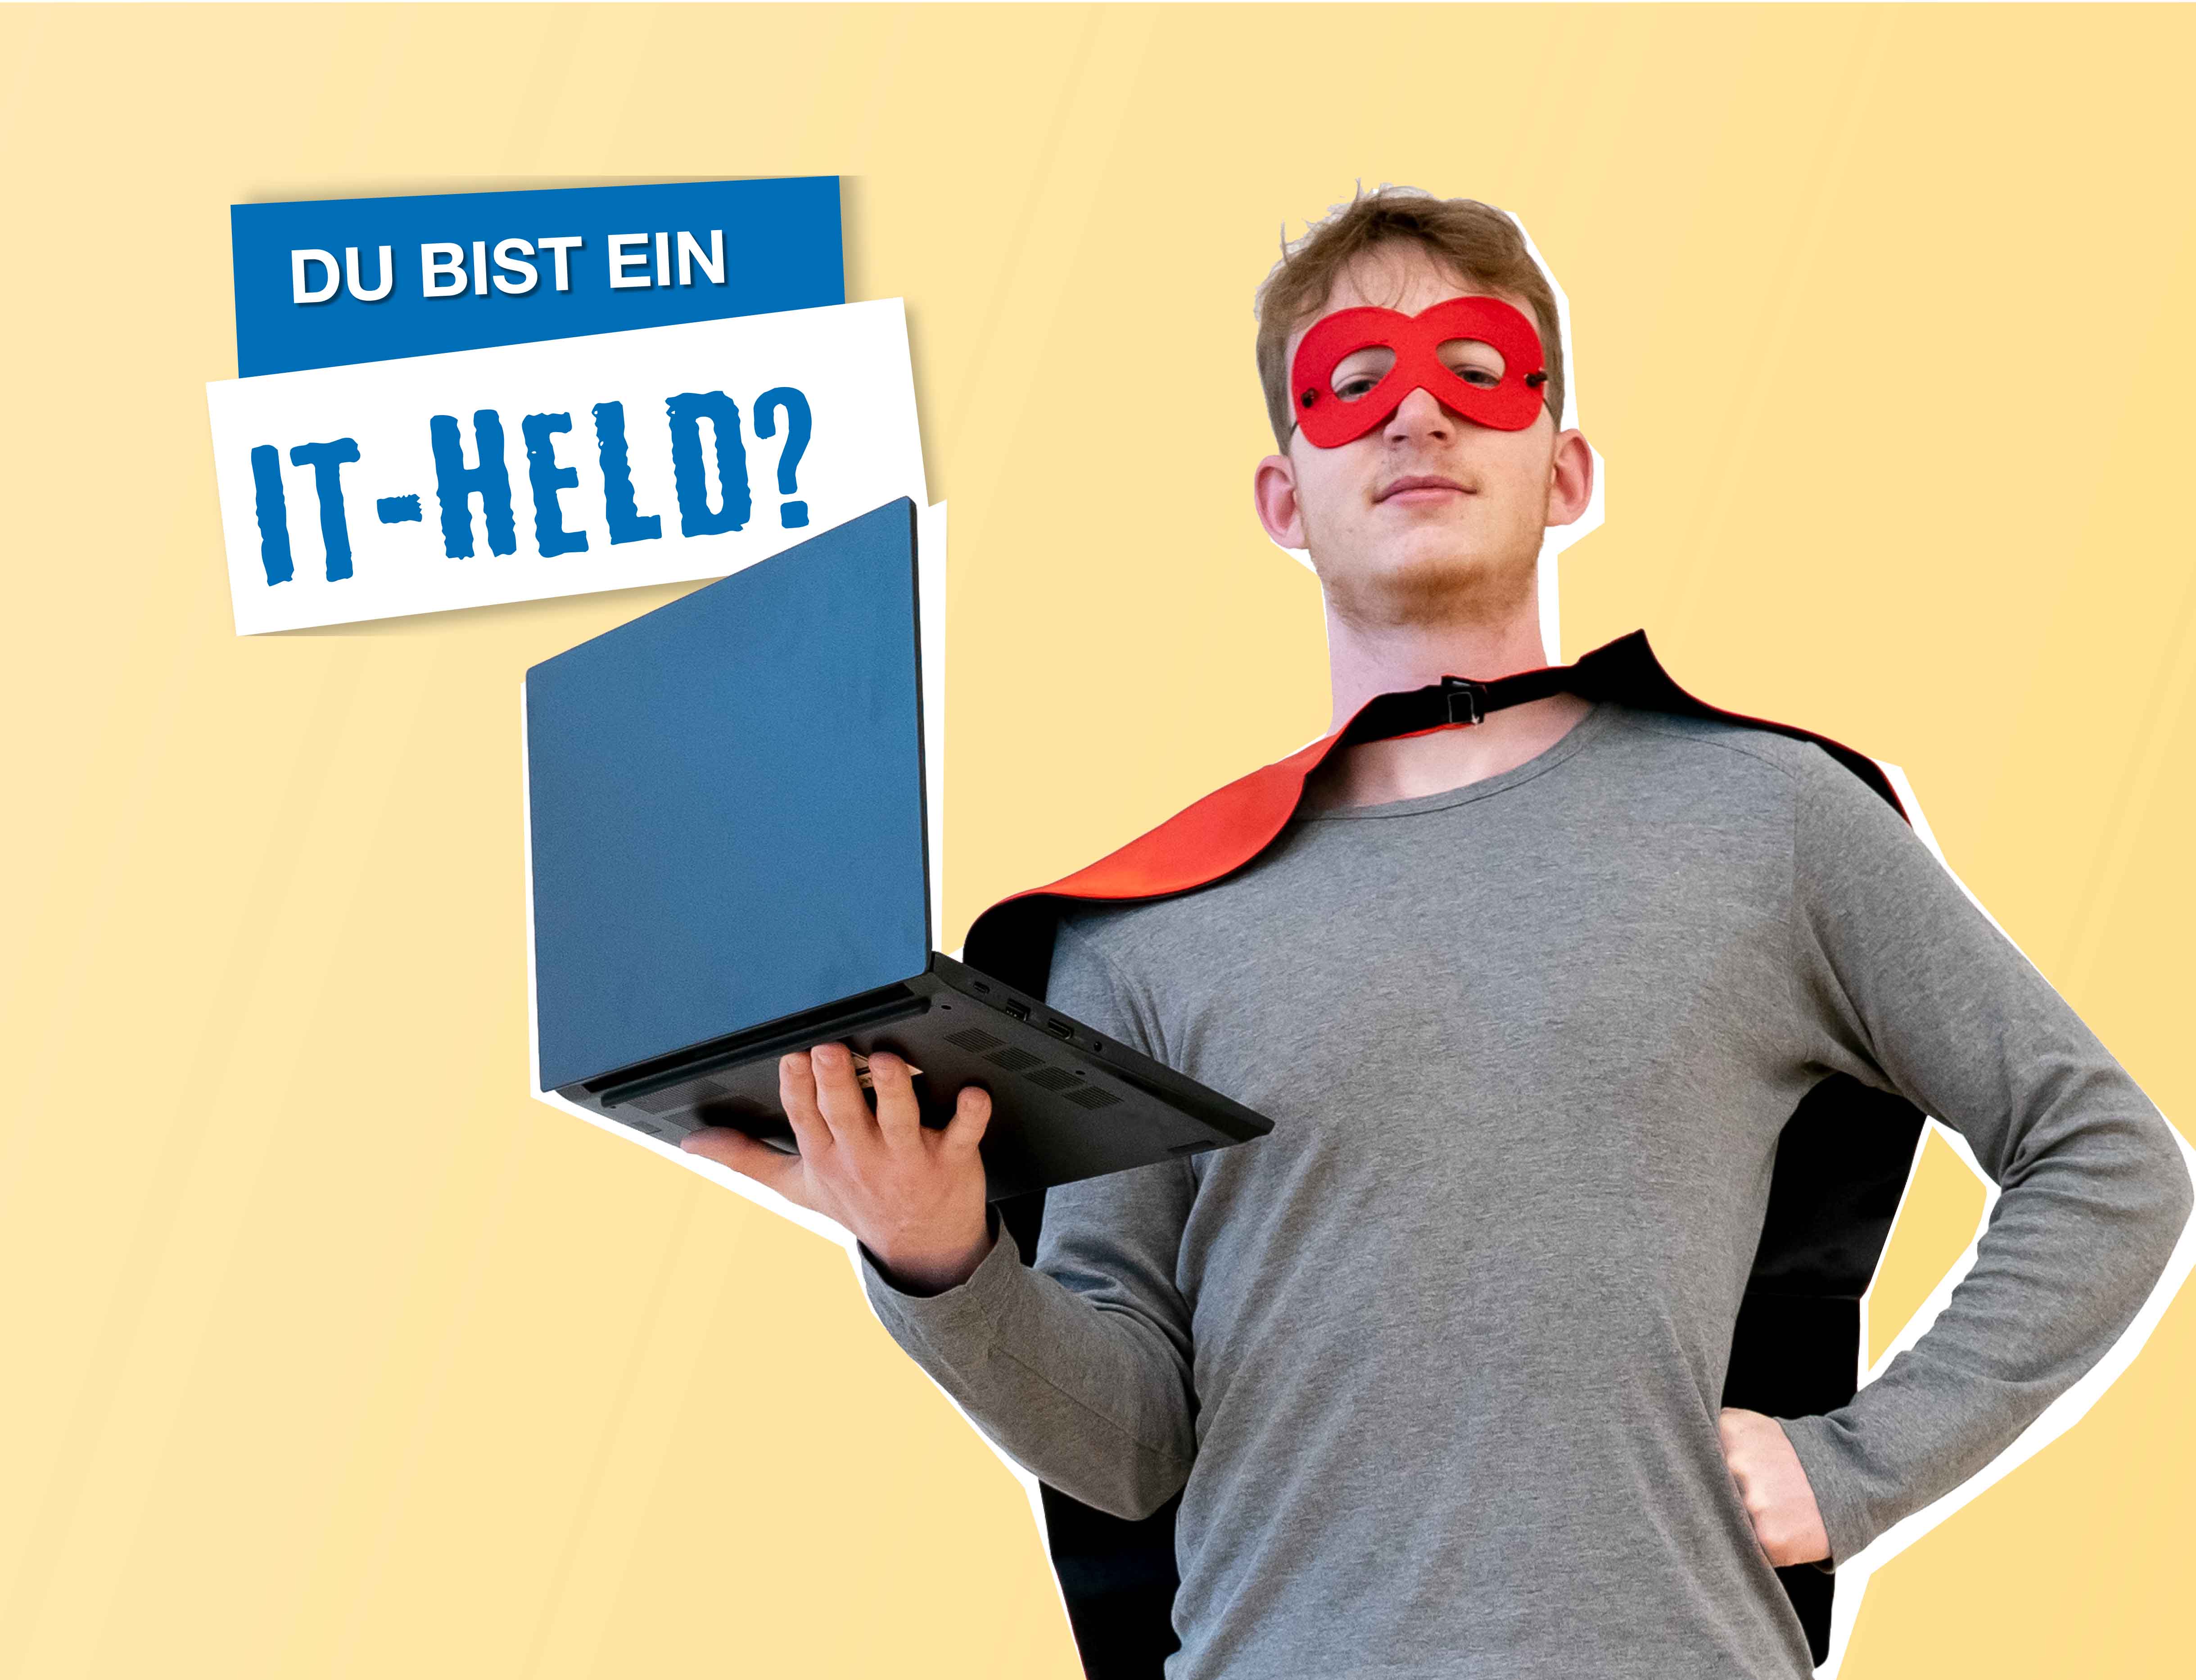 gelber Hintergrund, in der Mitte steht ein Mann mit einem Superheldenumhang und einer Augenmaske, in der Hand hält er einen Laptop, daneben steht "Du bist ein IT-Held?"